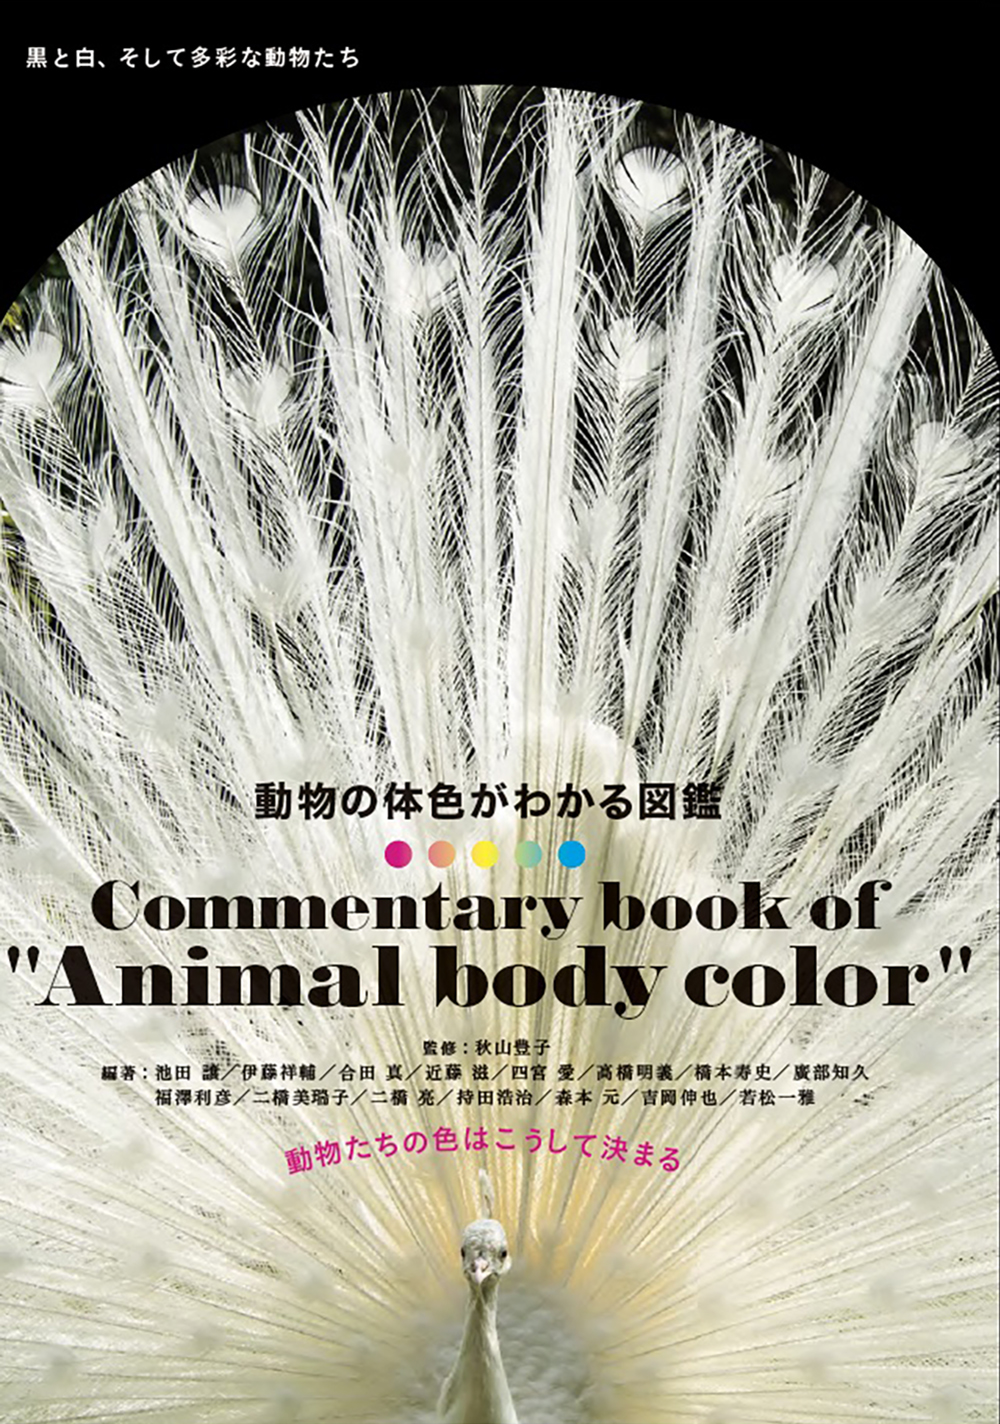 動物たちの不思議な色と模様 その仕組みと意味を解き明かす 動物の体色がわかる図鑑 7月発売 株式会社グラフィック社のプレスリリース